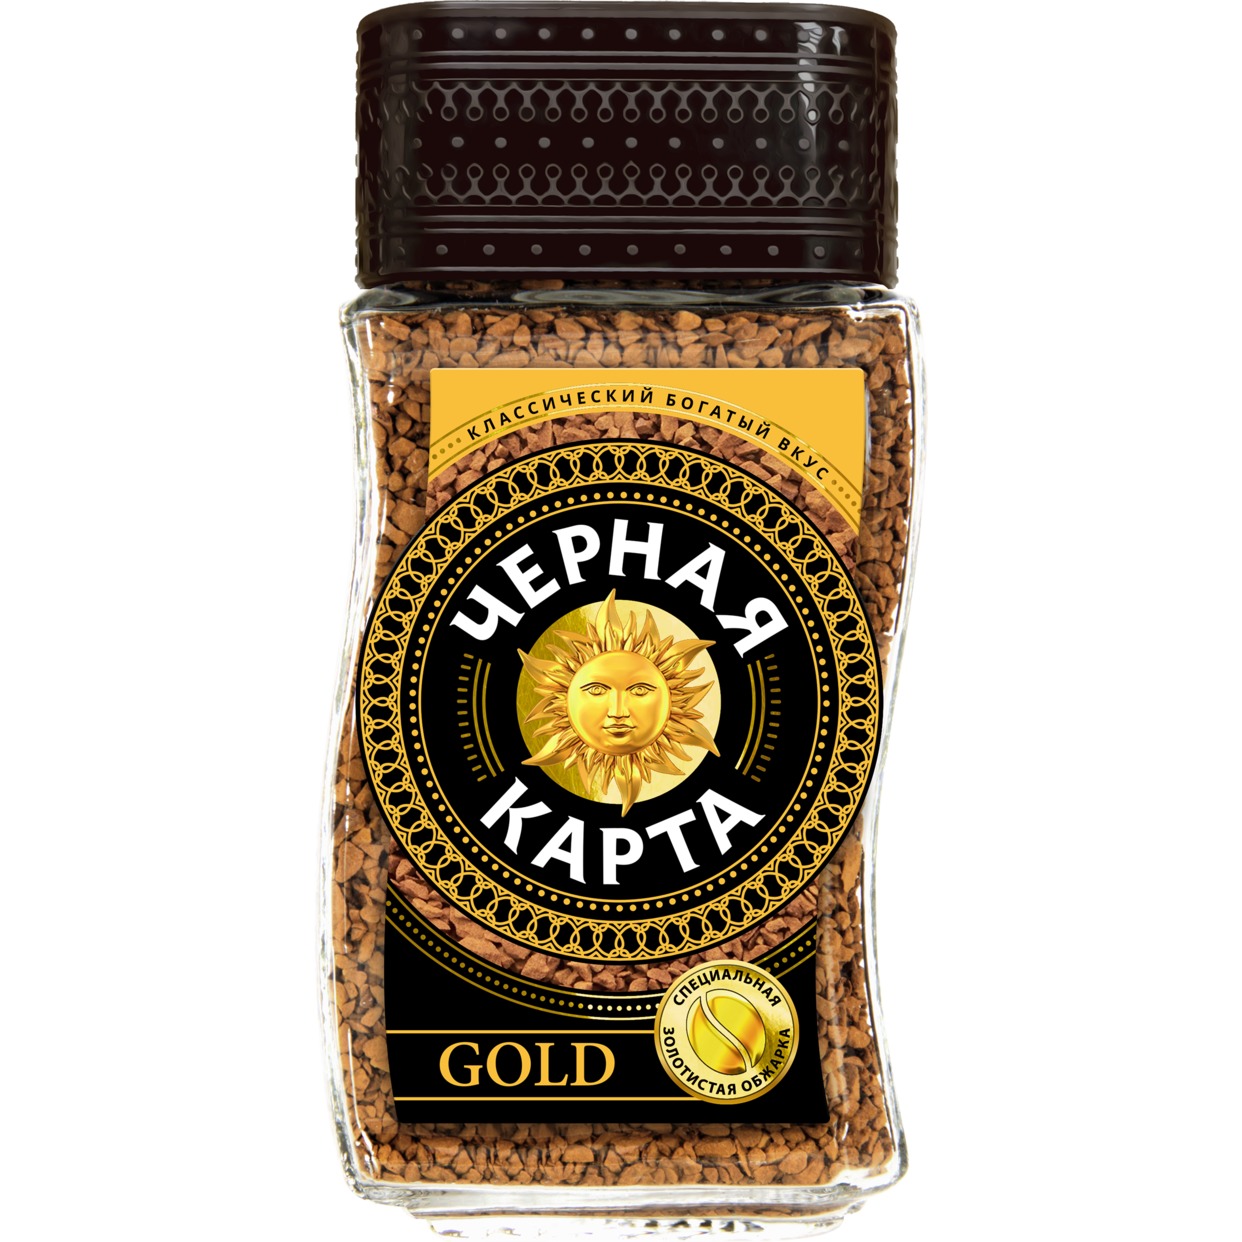 Кофе Черная Карта Gold натуральный растворимый сублимированный 190 г